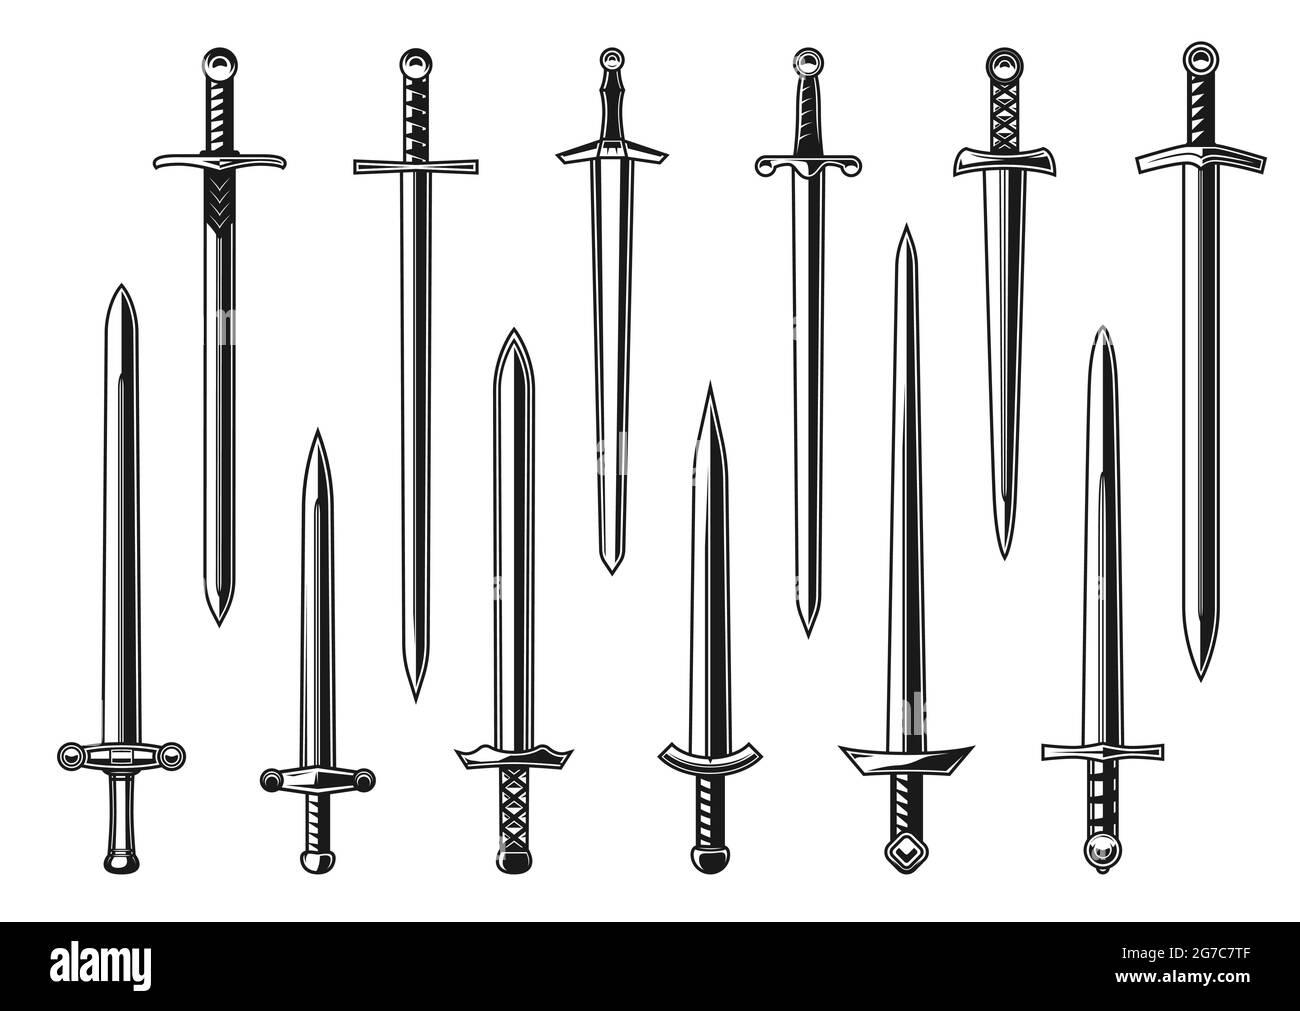 Europäischer Ritter gerade Schwerter Vektor-Design mit Waffe der  mittelalterlichen Armee Krieger. Isolierter Dolch, Messer oder Breitschwert  mit zweischneidigen Klingen, hil Stock-Vektorgrafik - Alamy